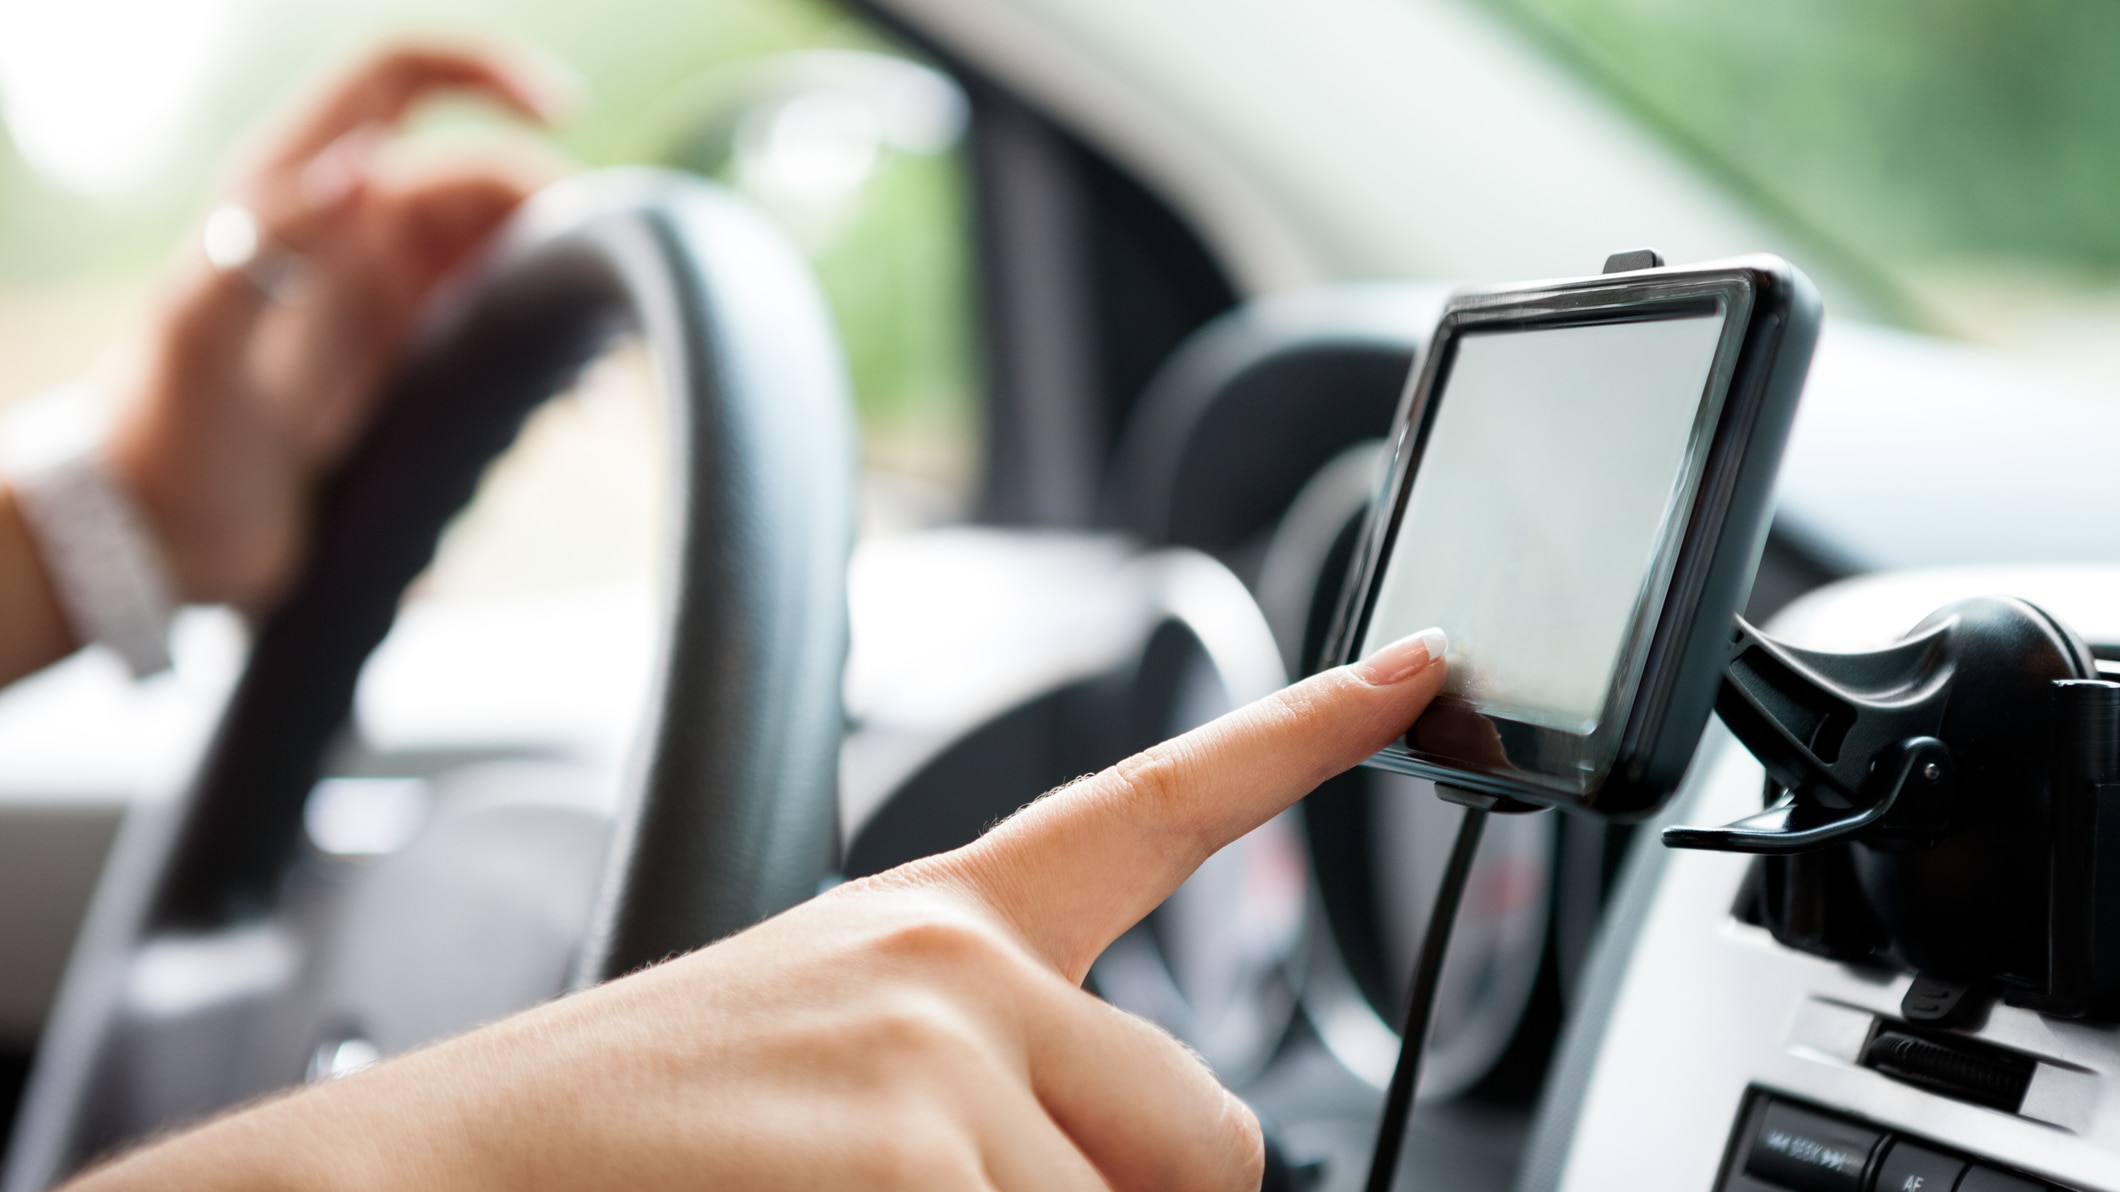 Les gadgets dans la voiture, plus dangereux que les textos au volant